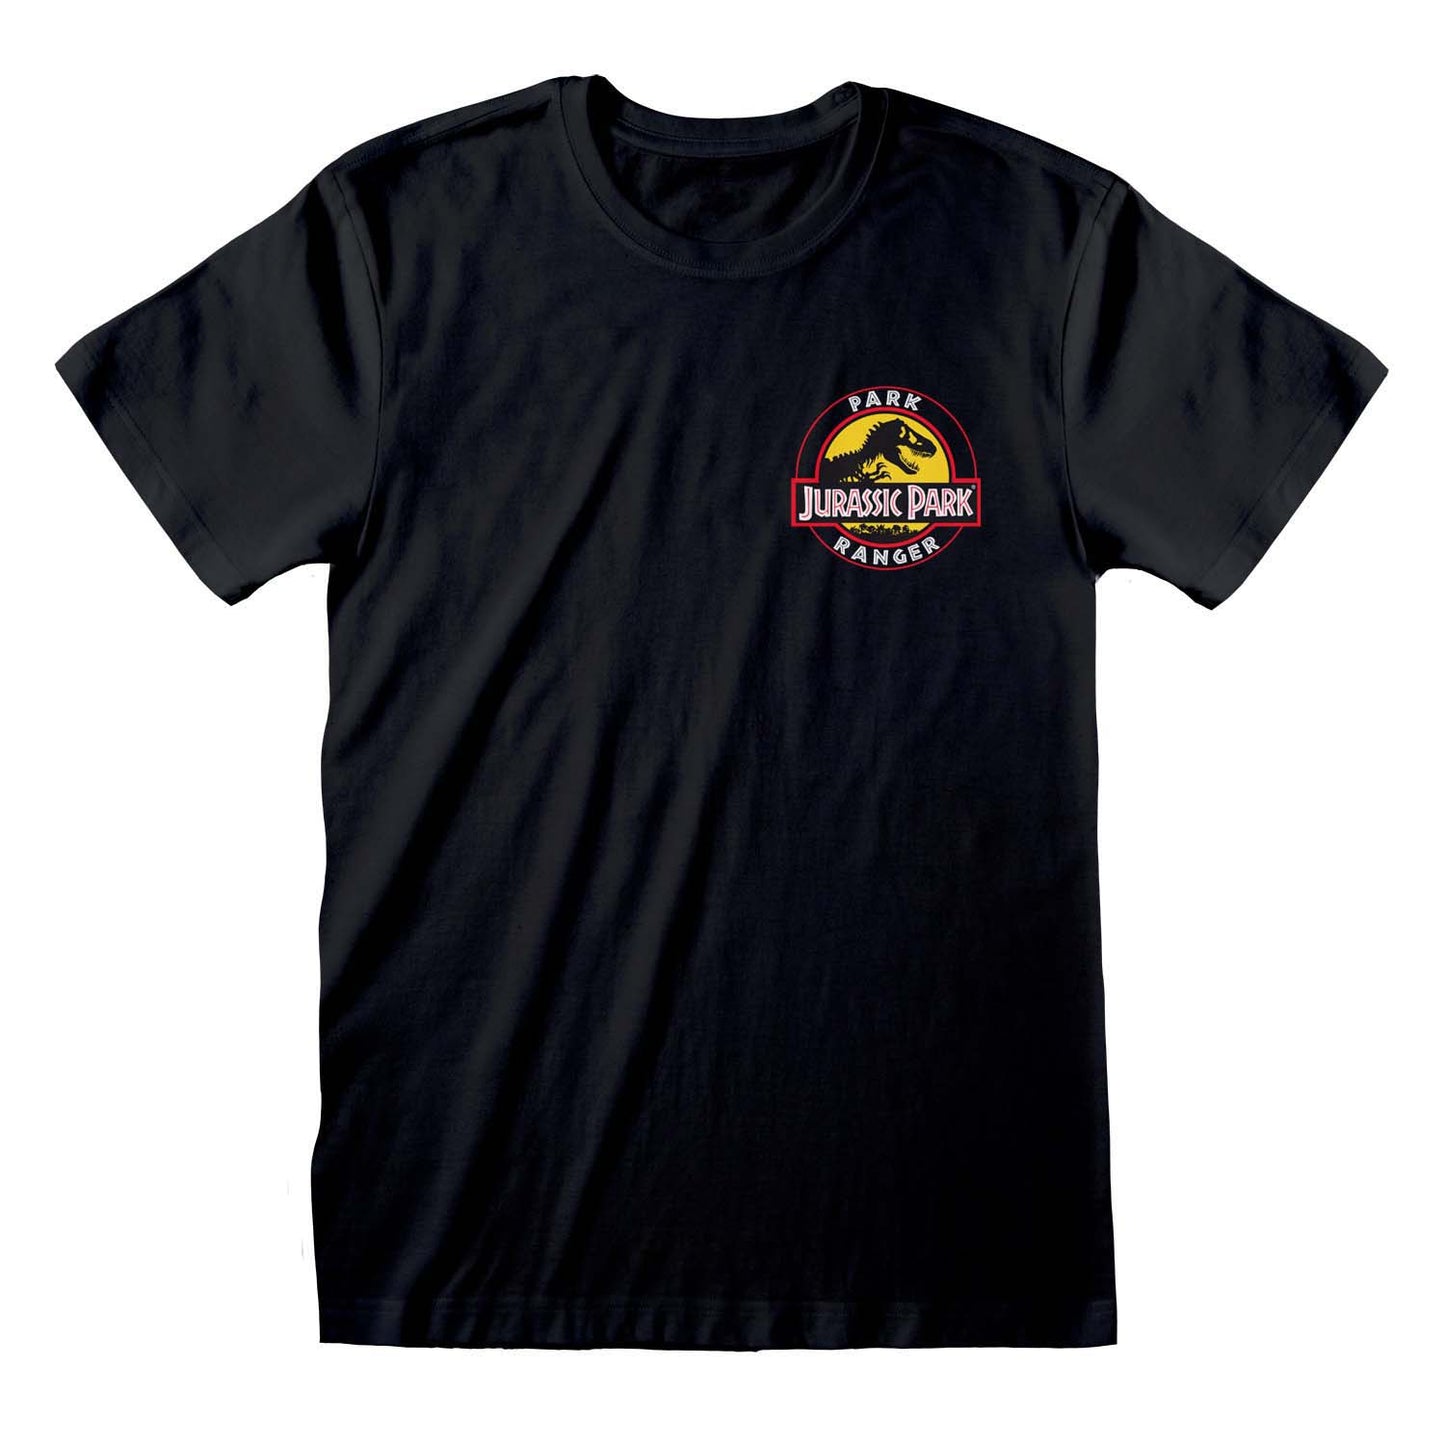 JURASSIC PARK - Park Ranger T-Shirt